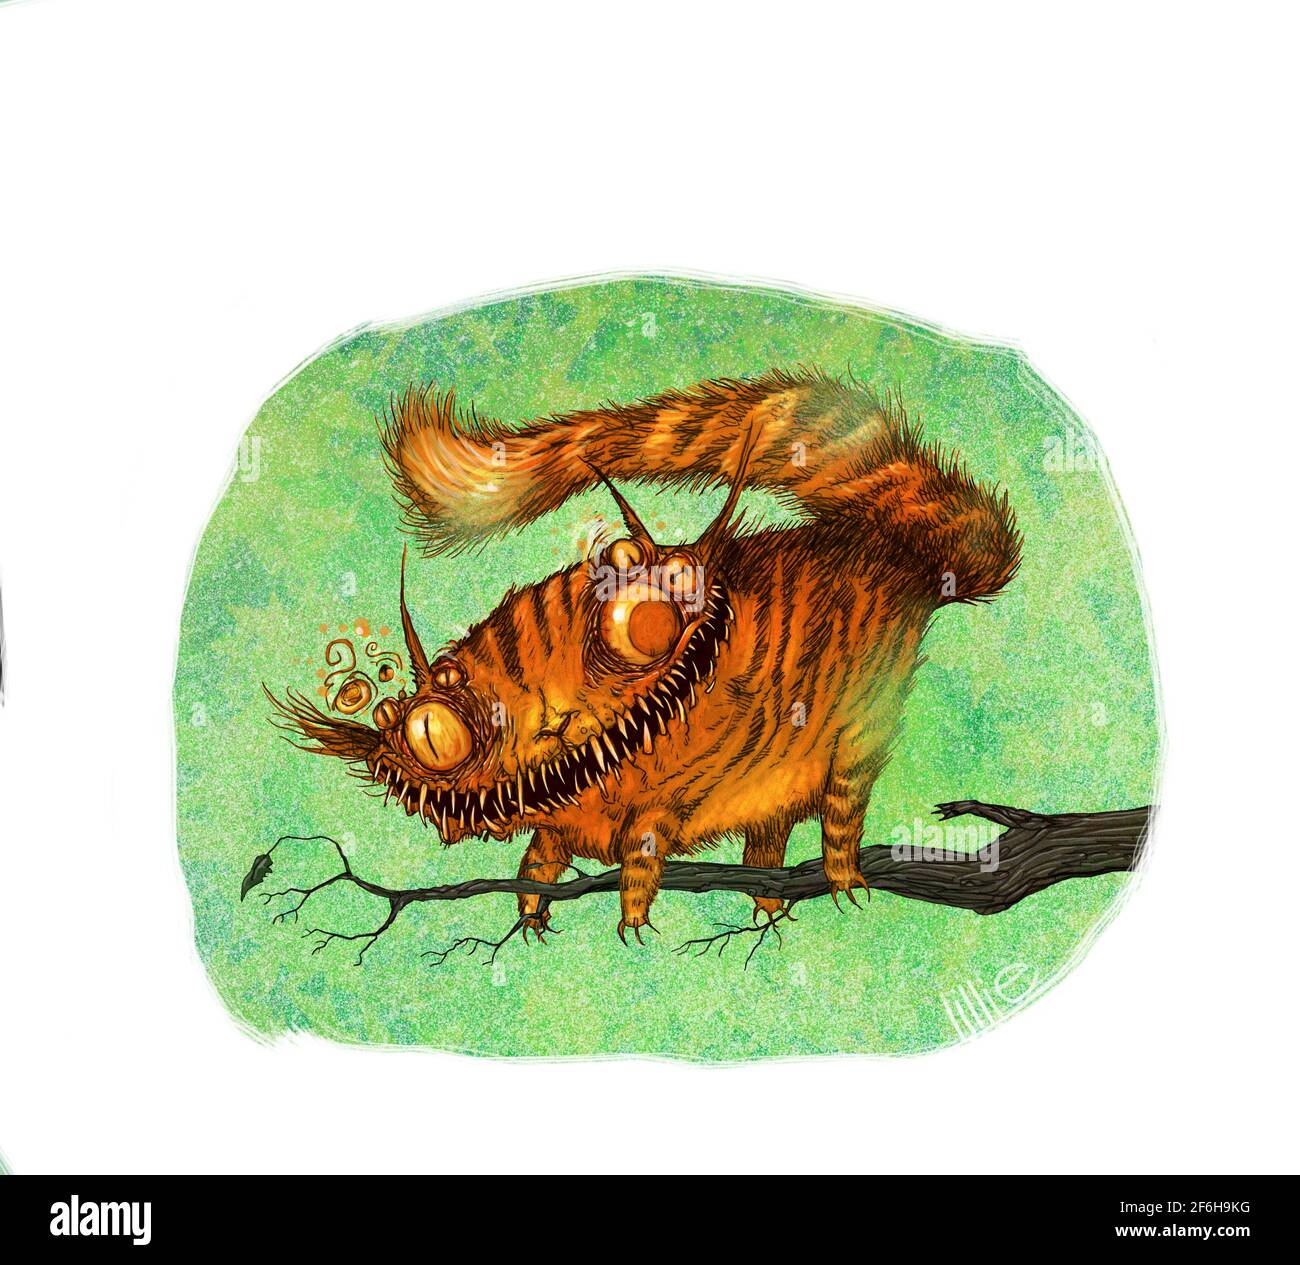 Illustration de l'art de style aquarelle du chat Cheshire d'Alice in Wonderland, perché sur une branche d'arbre. Livre de costume couverture éditoriale de fantaisie art Banque D'Images